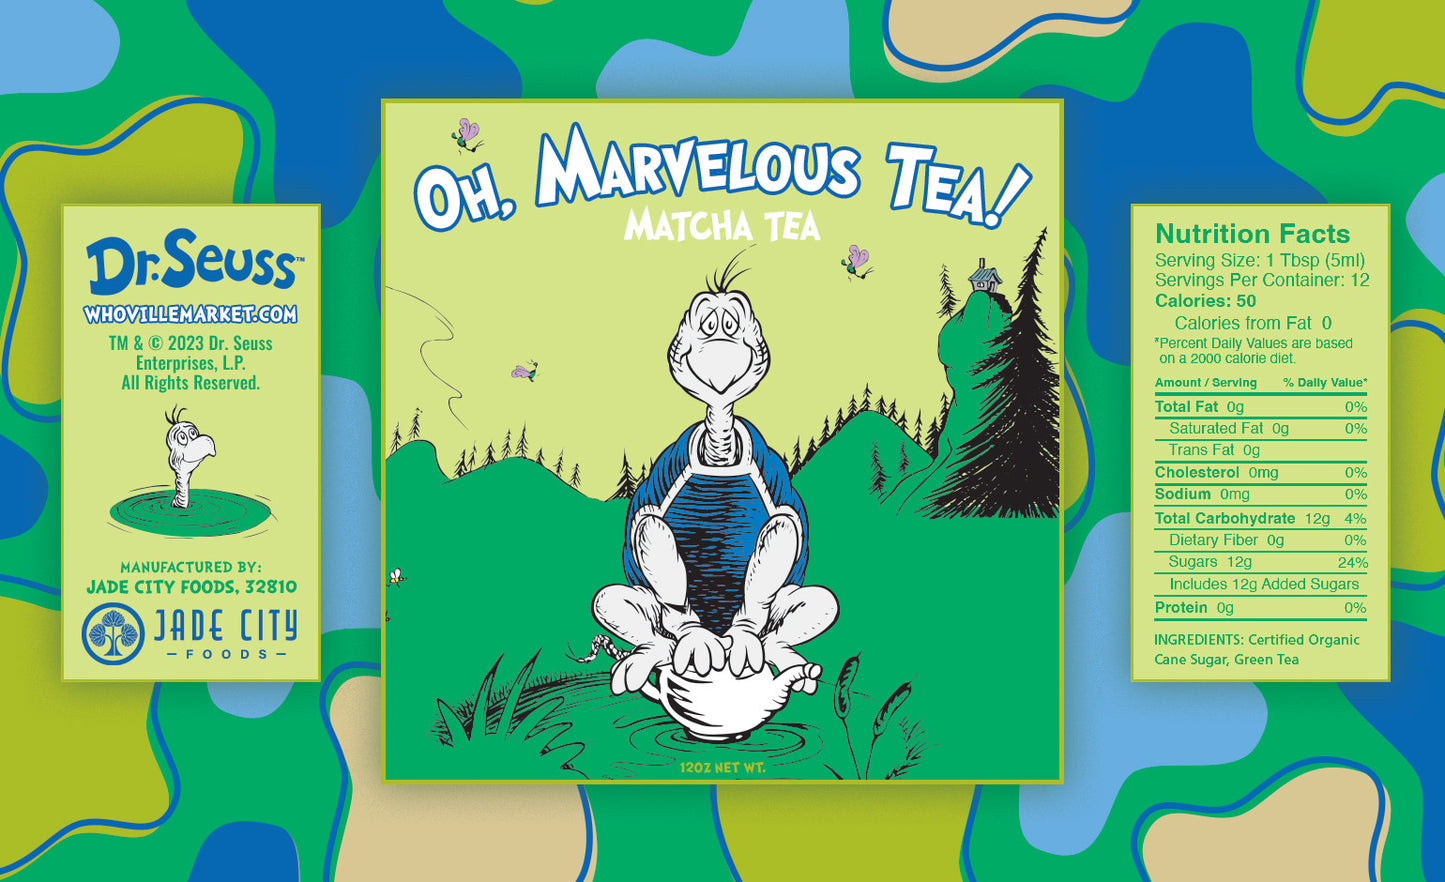 Oh, Marvelous Tea : Matcha Tea